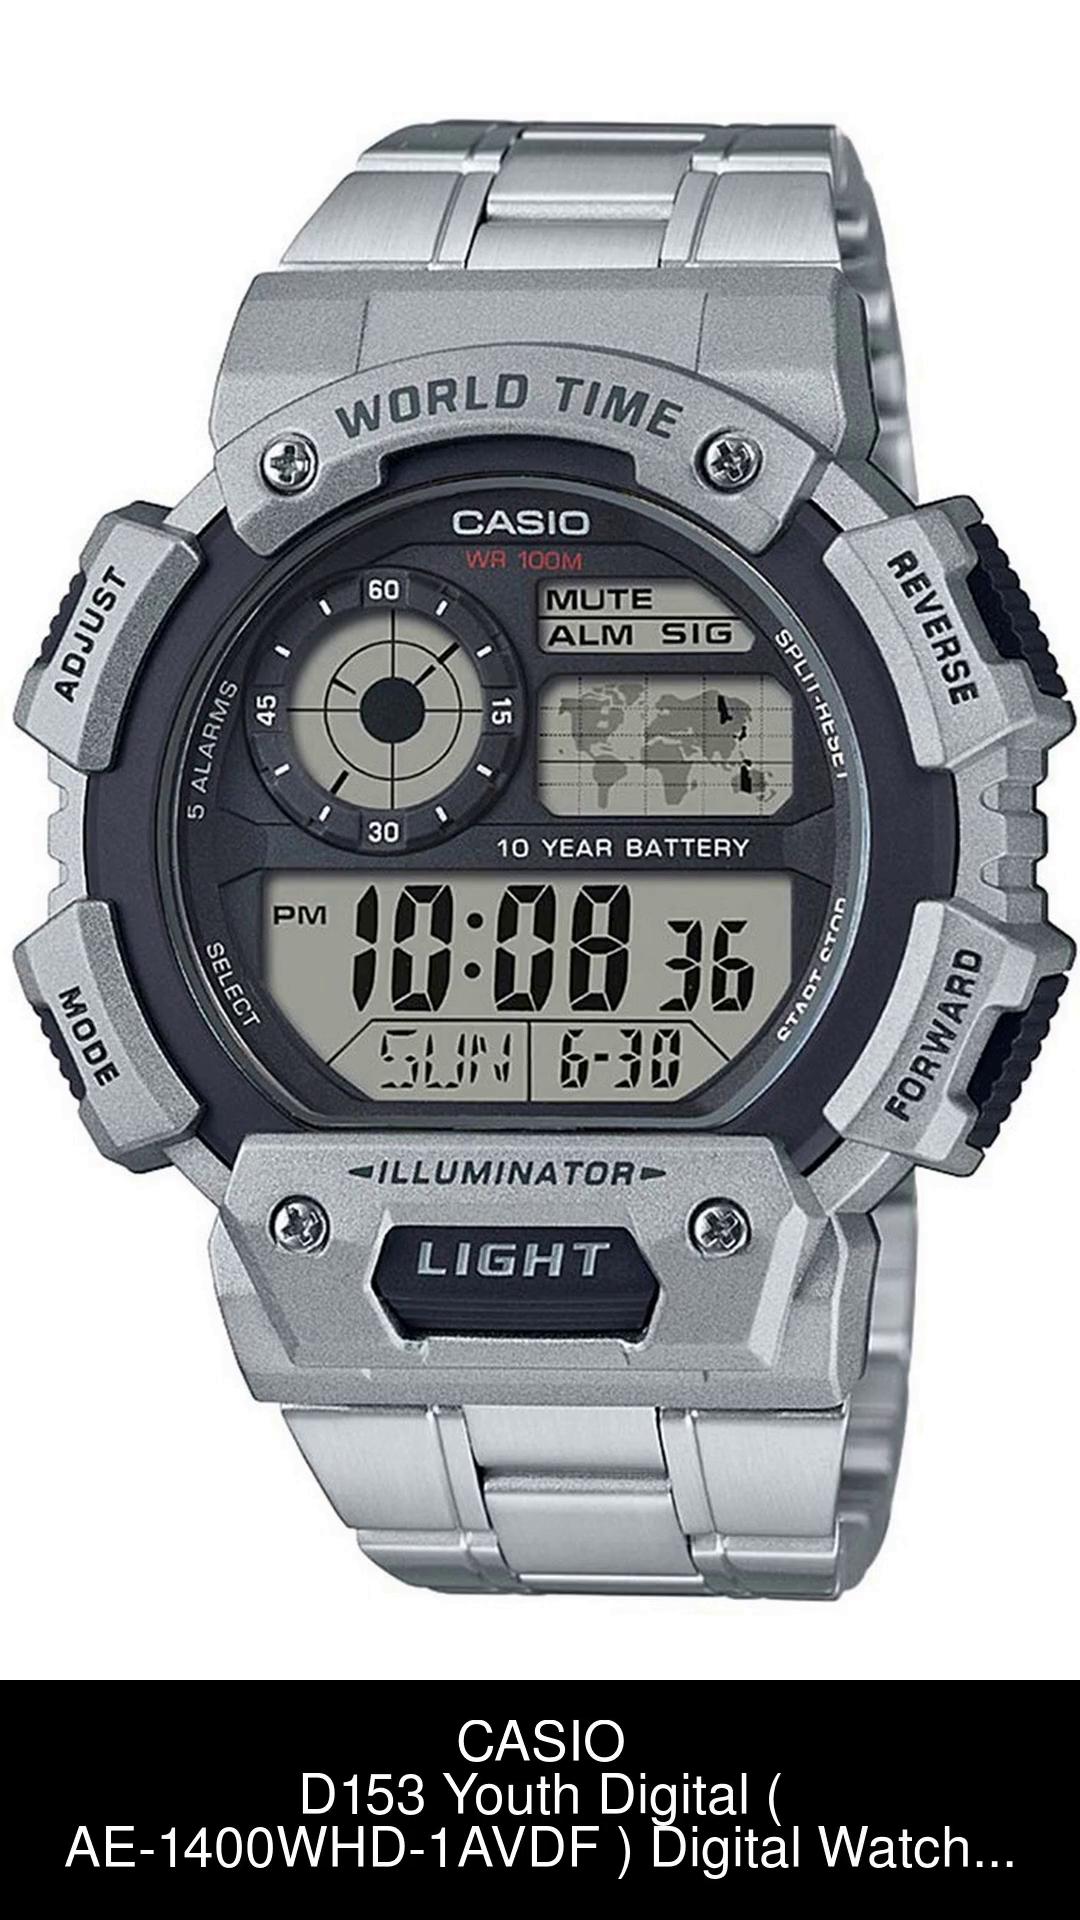 ORIGINAL CASIO World Time Digital Illuminator Stainless Steel Men's Watch  AE-1400WHD-1AV / Legit Casio World Time Illuminator Digital Men's Watch  AE1400WHD-1AV